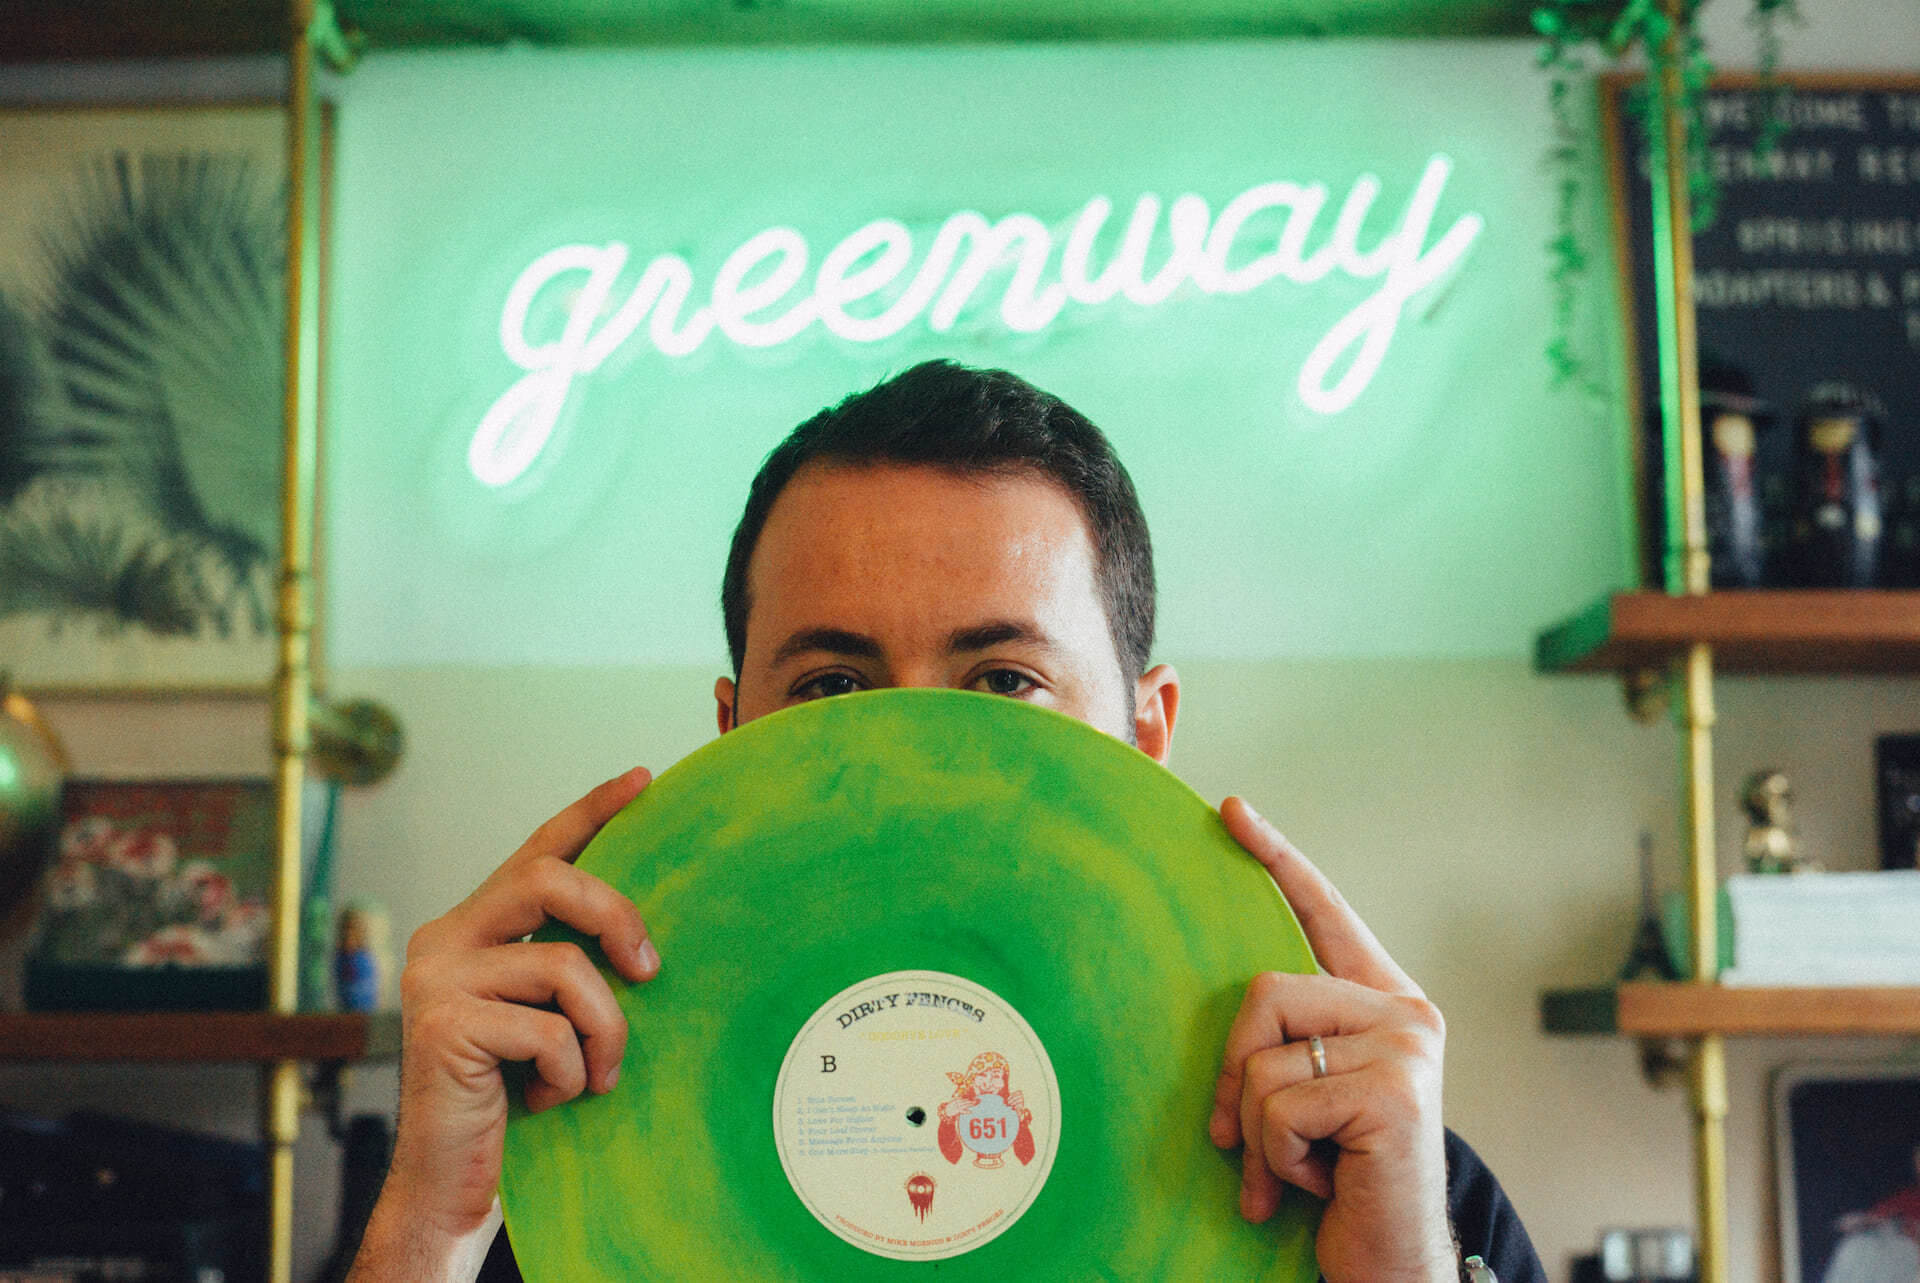 アナログレコード専門レーベル「Greenway Records」オーナーの“打ち合わせ場所、アイデアの棚、息抜きドーナツ屋、最近のベニュー”